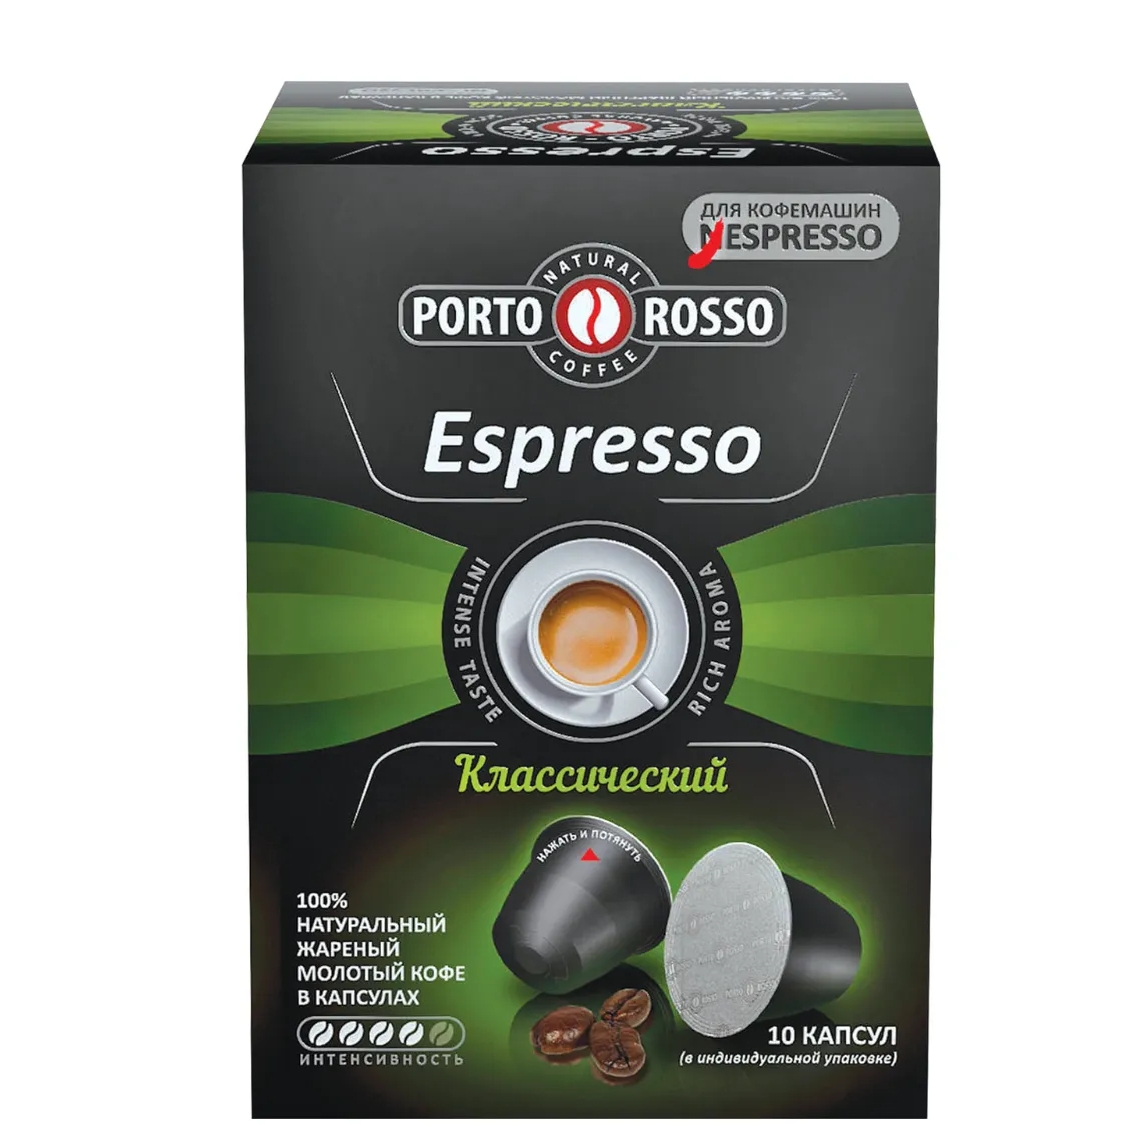 Кофе в капсулах Porto Rosso Espresso Классический, 10х5 г кофе молотый porto rosso speciale 220 г